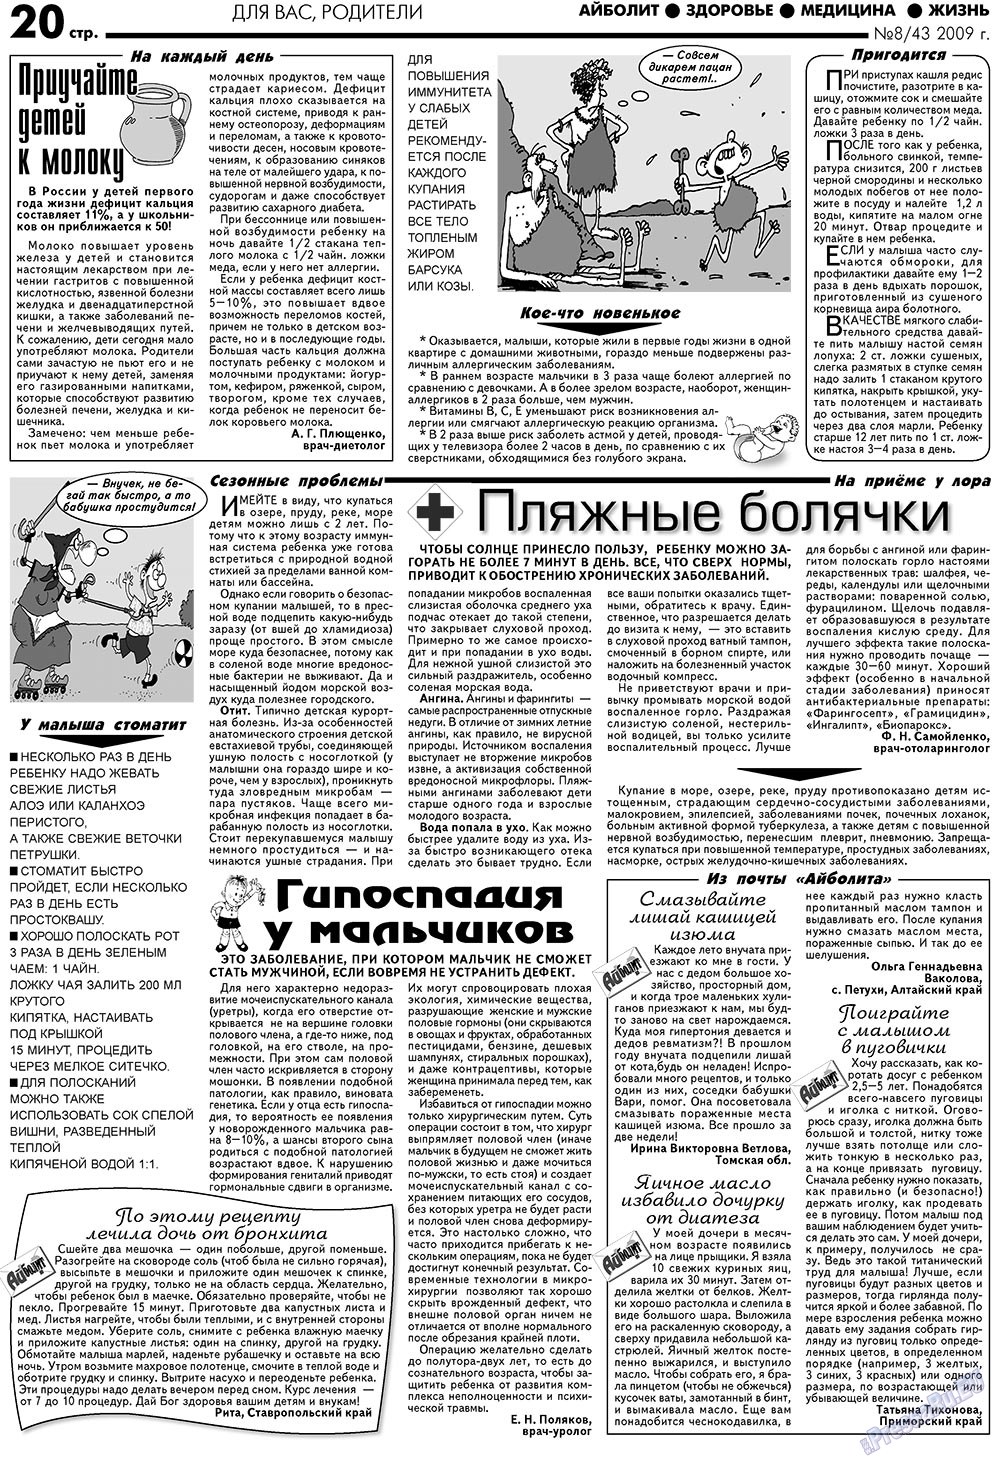 АйБолит, газета. 2009 №8 стр.20